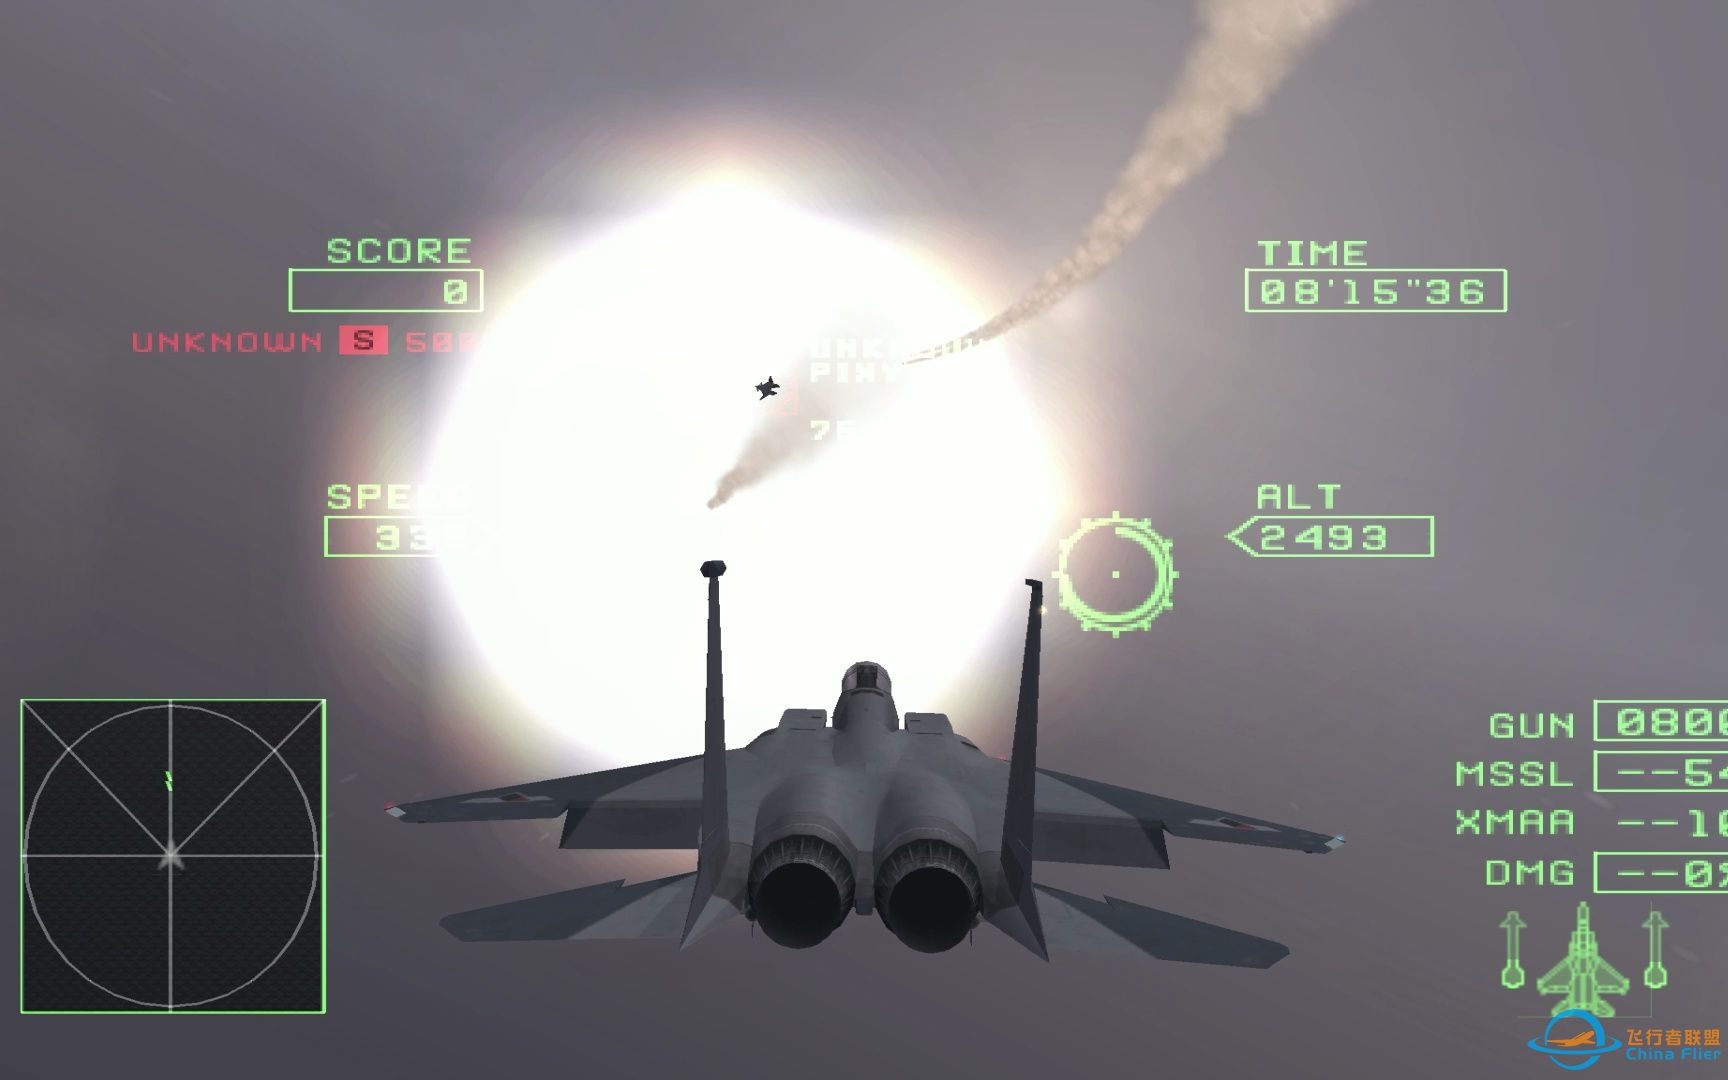 皇牌空战0 4K超高清完美模拟 有云爆炸效果正常 支持皇牌空战5-3392 